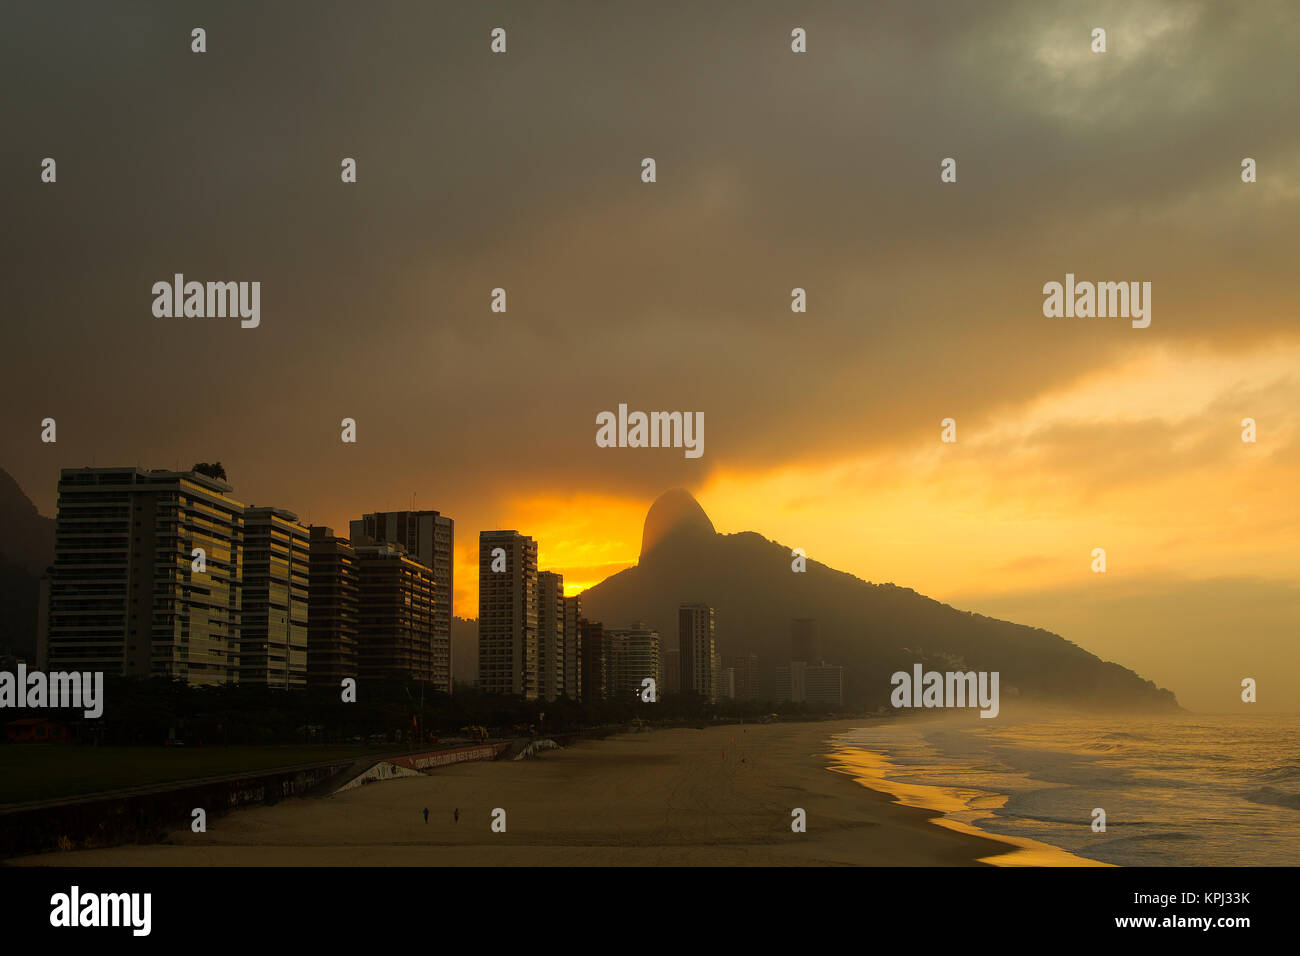 Sunrise at São Conrado beach, Rio de Janeiro, Brazil Stock Photo